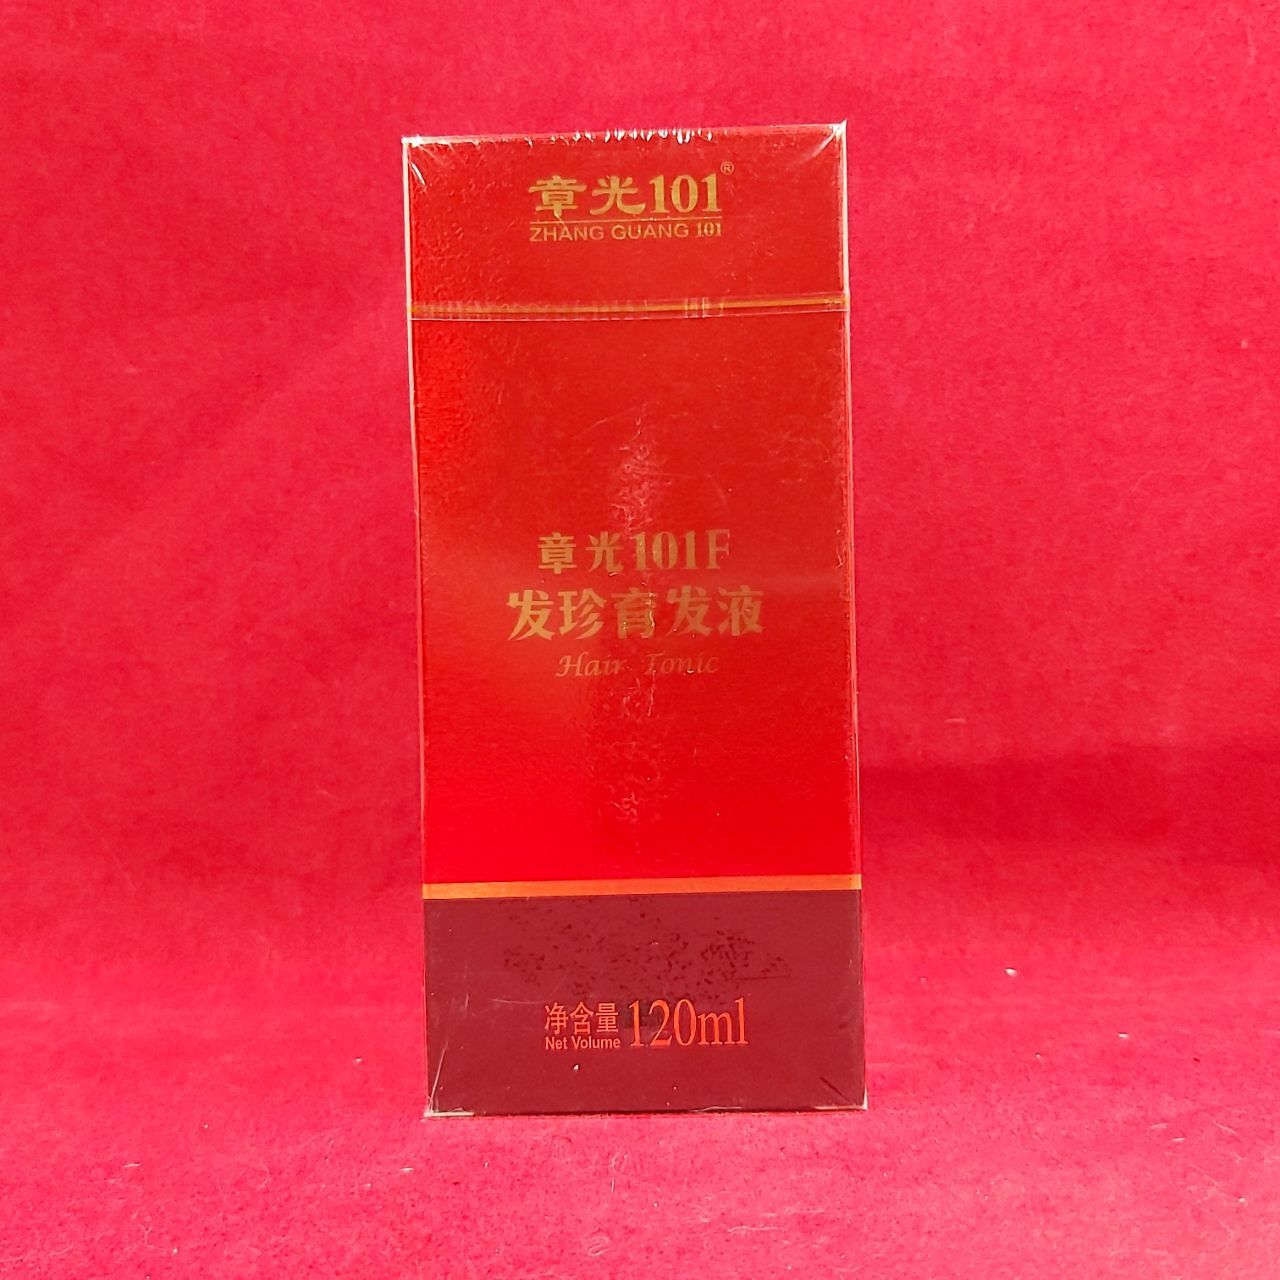 Лосьон от облысения Zhangguang 101 F Hair Tonic для сухой кожи головы